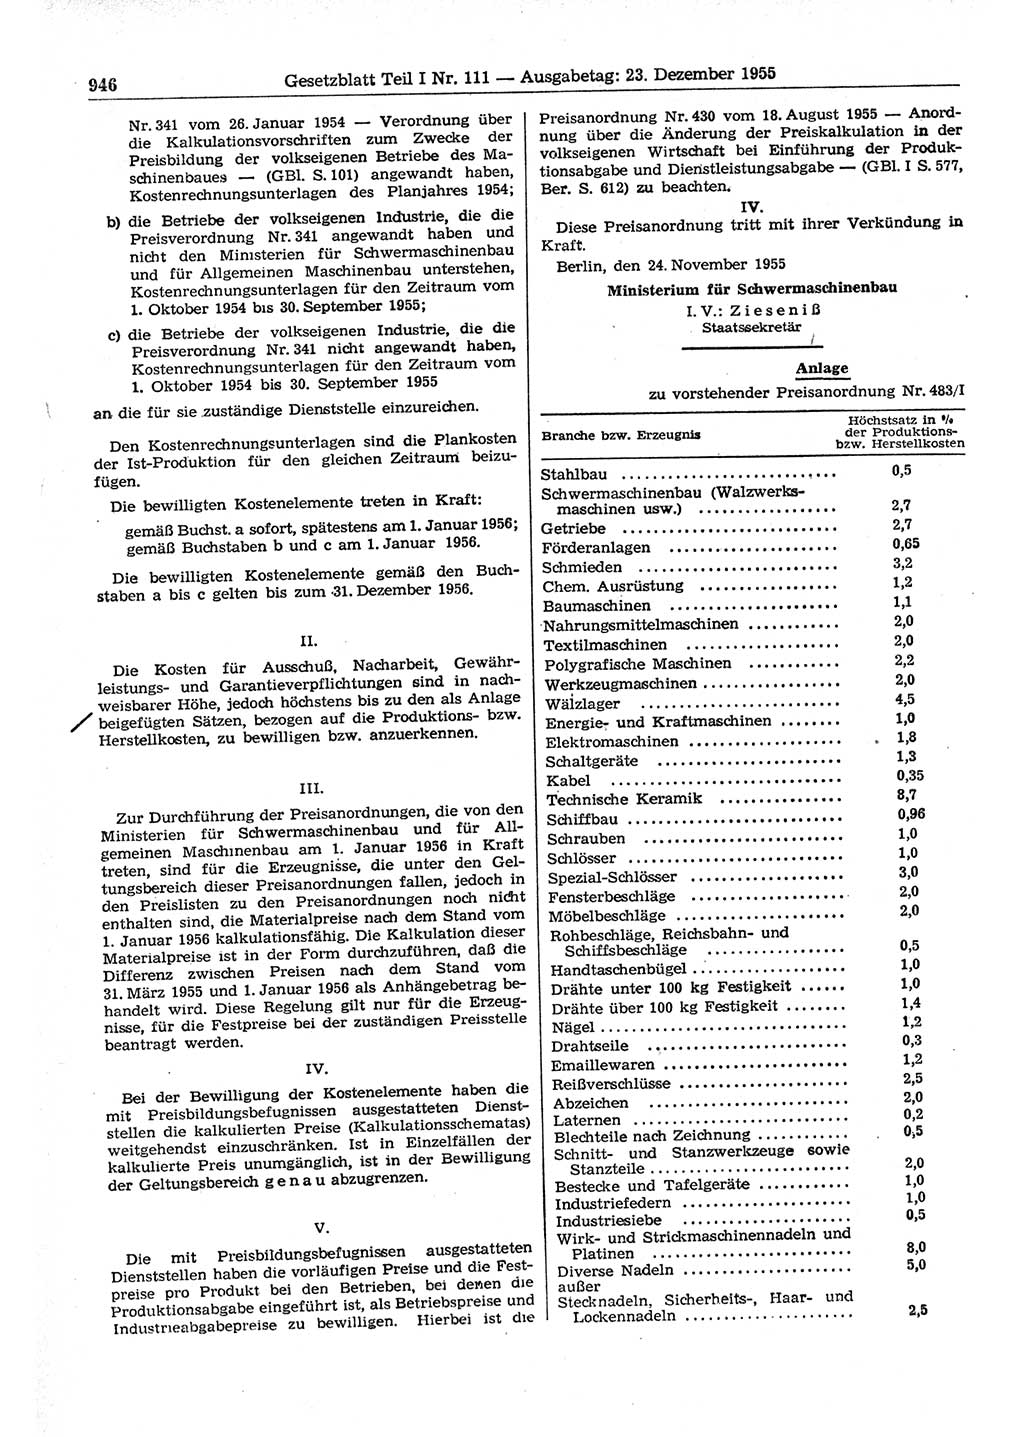 Gesetzblatt (GBl.) der Deutschen Demokratischen Republik (DDR) Teil Ⅰ 1955, Seite 946 (GBl. DDR Ⅰ 1955, S. 946)